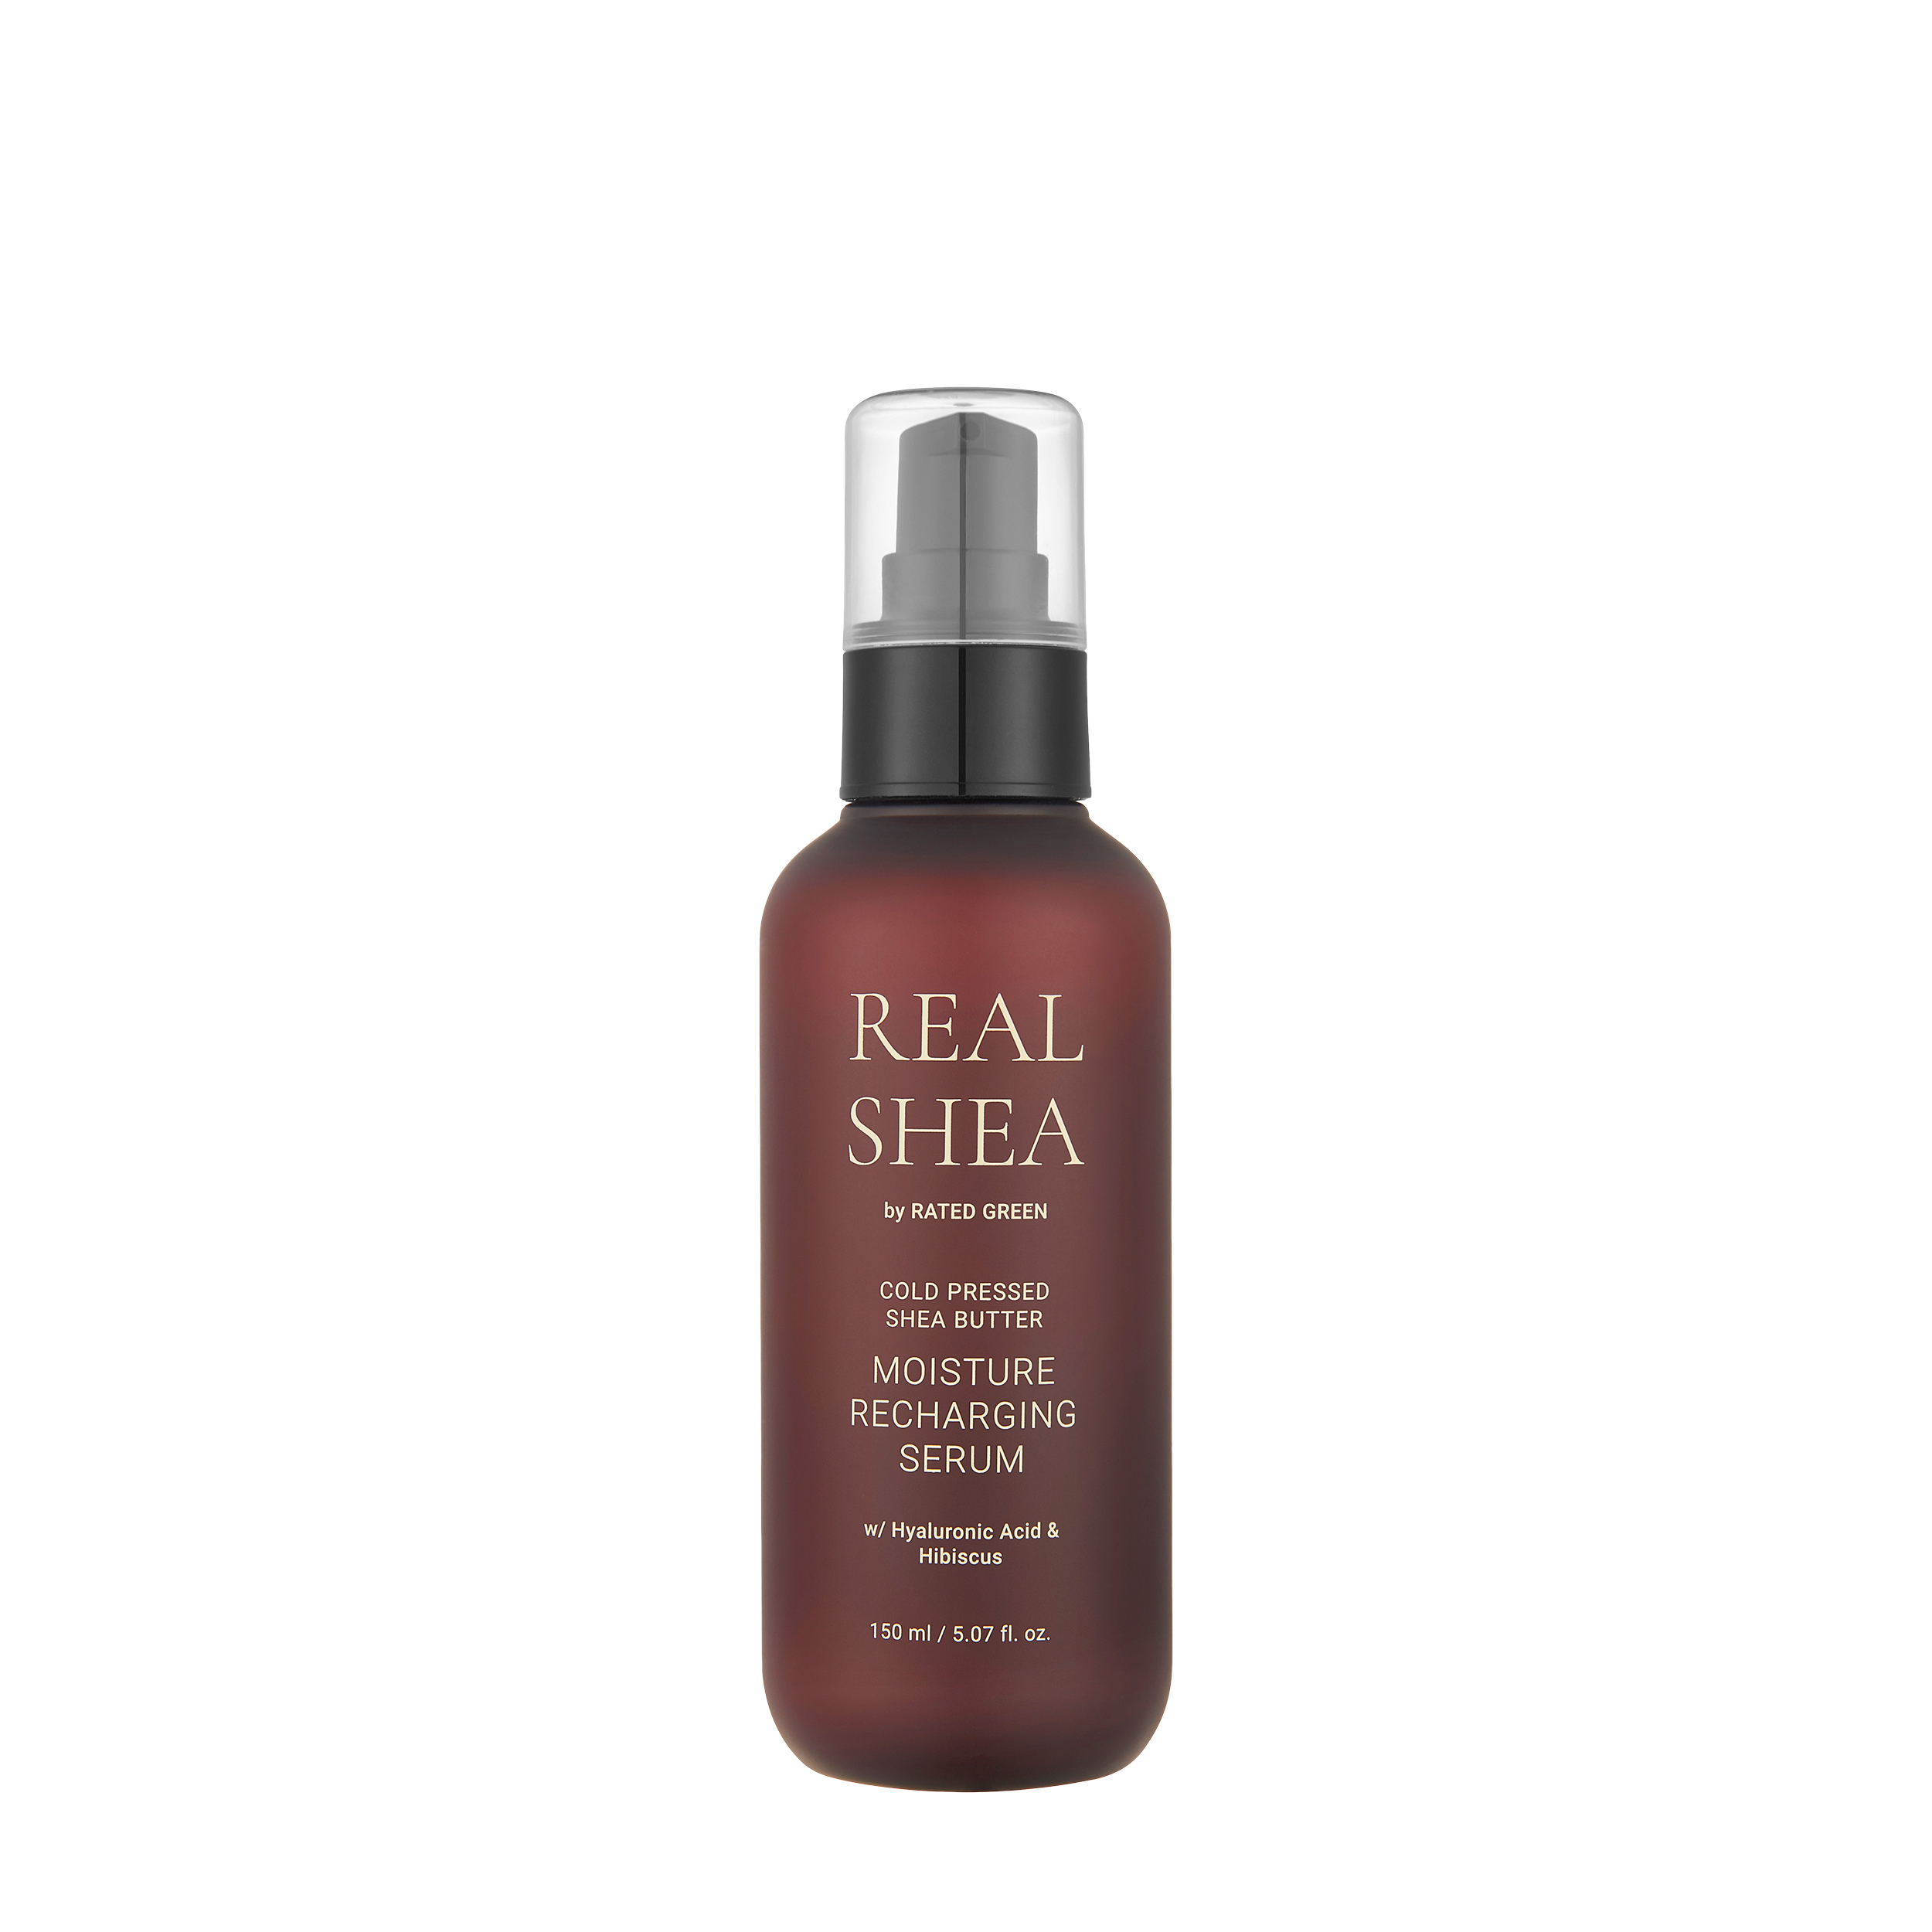 Rated Green Увлажняющая сыворотка для волос с маслом ши
Real Shea Moisture Recharging Serum